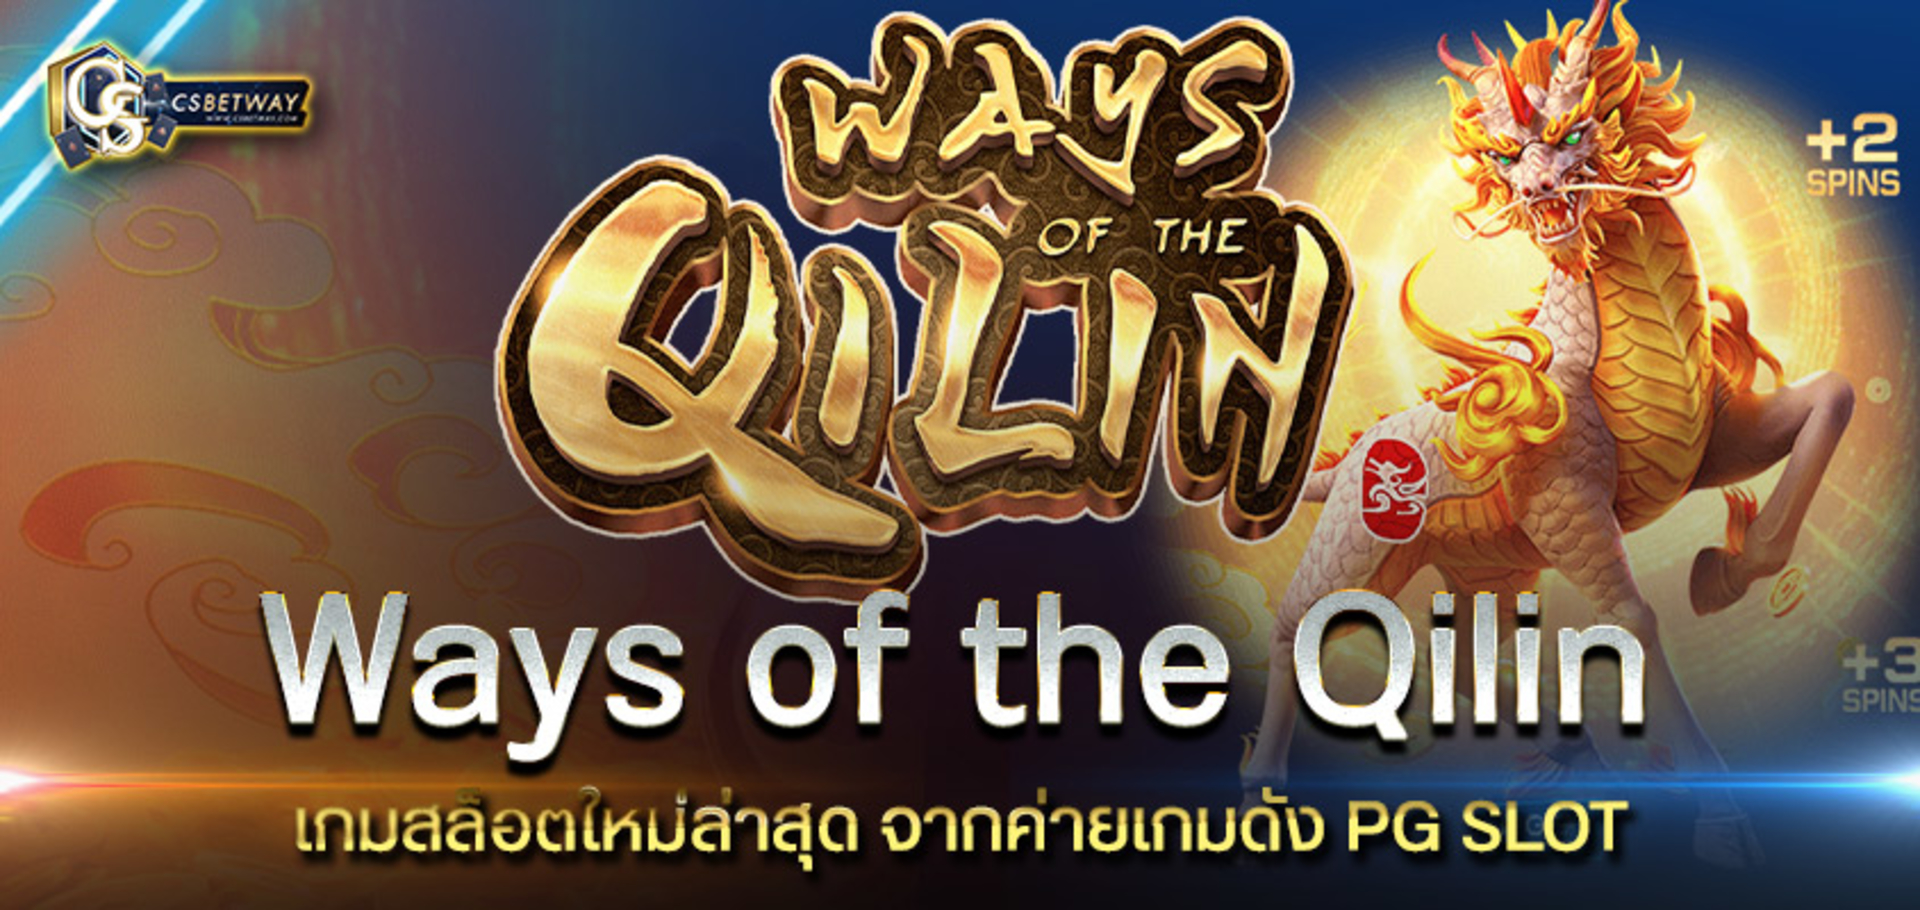 เกมสล็อตออนไลน์ Ways of the Qilin สล็อต วิถีแห่งกิเลน เกมใหม่จาก PG SLOT เล่นง่ายได้ สล็อตแตกบ่อย ทดลองได้แล้ววันนี้  สล็อตพีจี PGสล็อต